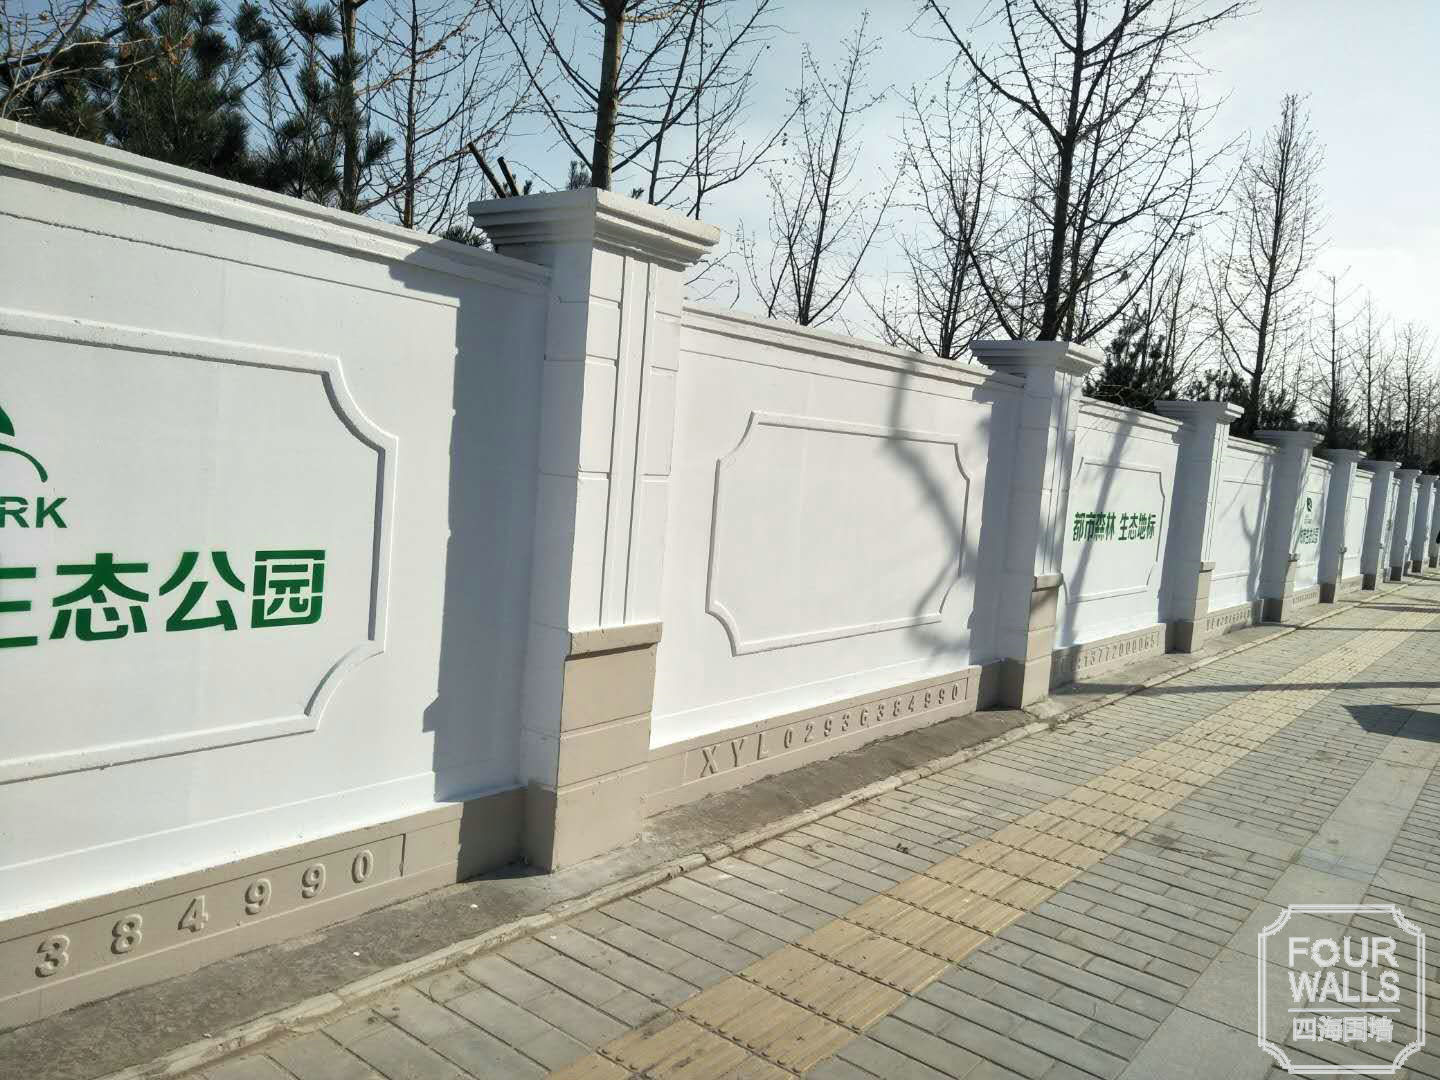 为什么陕西预制围墙被称为环保围墙呢?